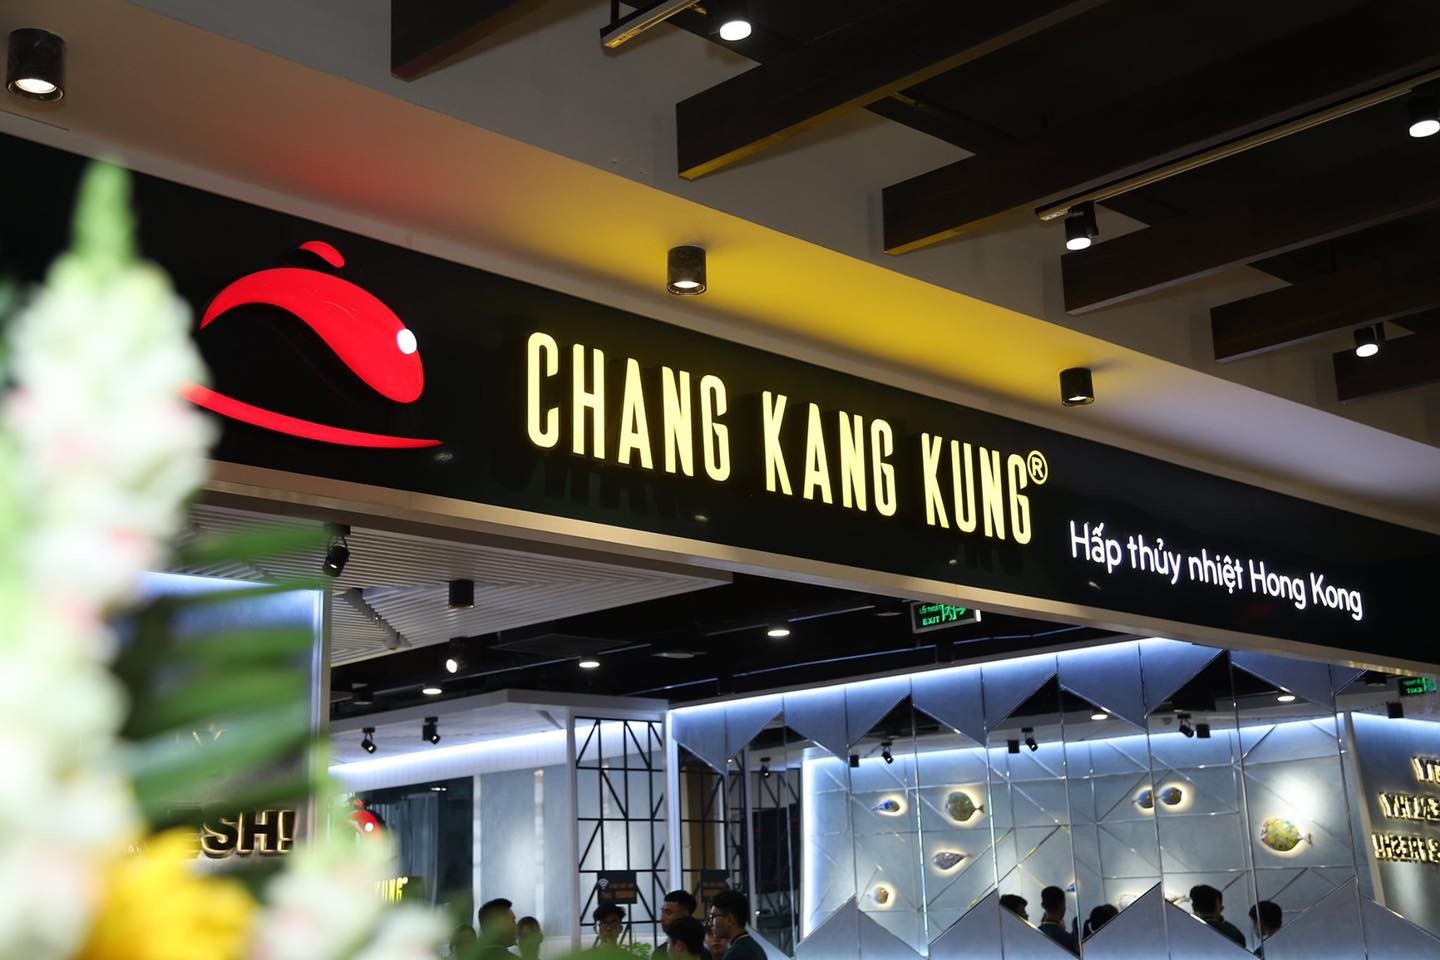 thương hiệu Chang Kang kung nổi bật